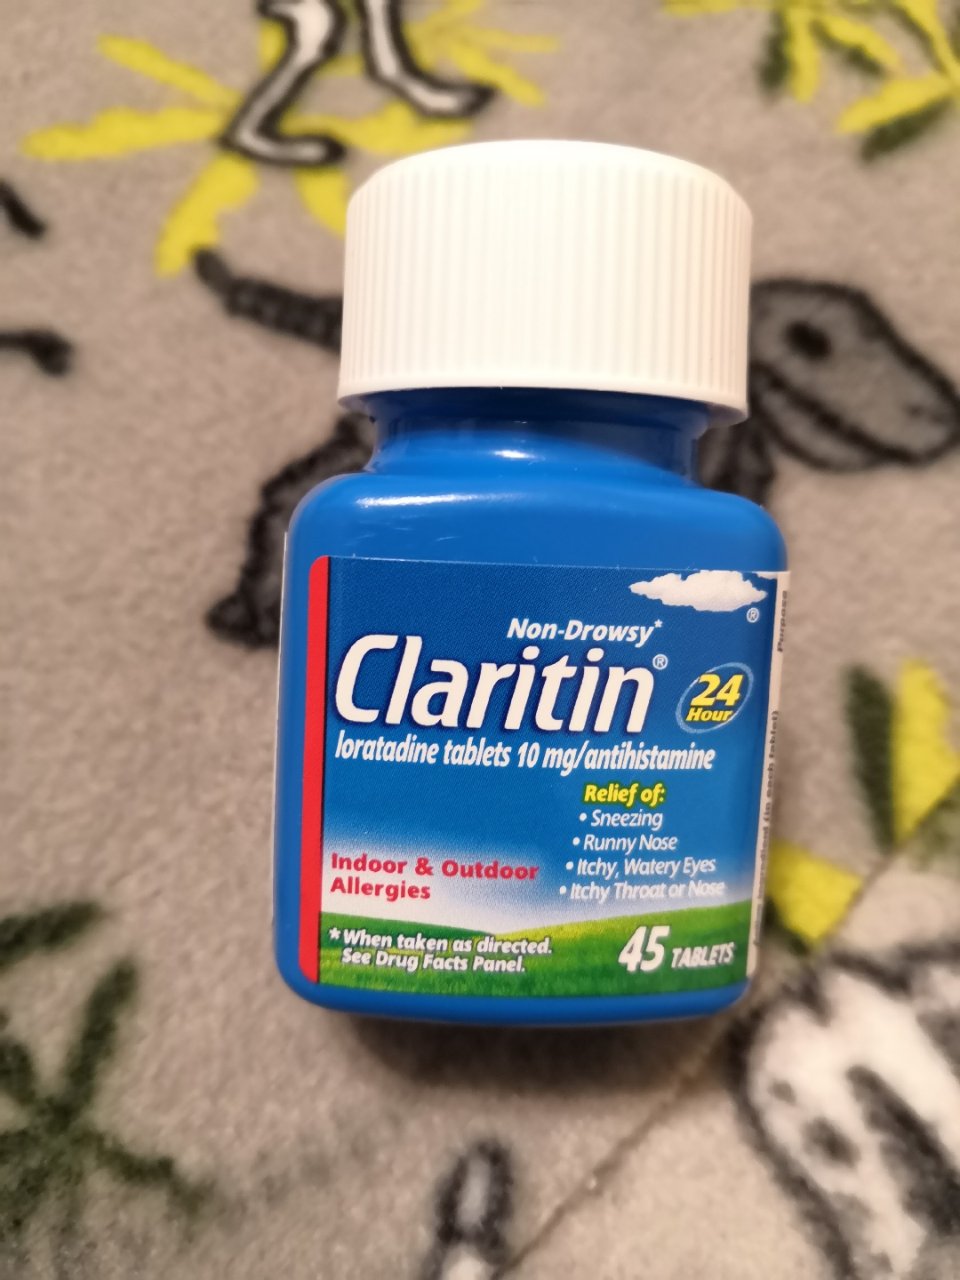 ⑧过敏药 Clartin